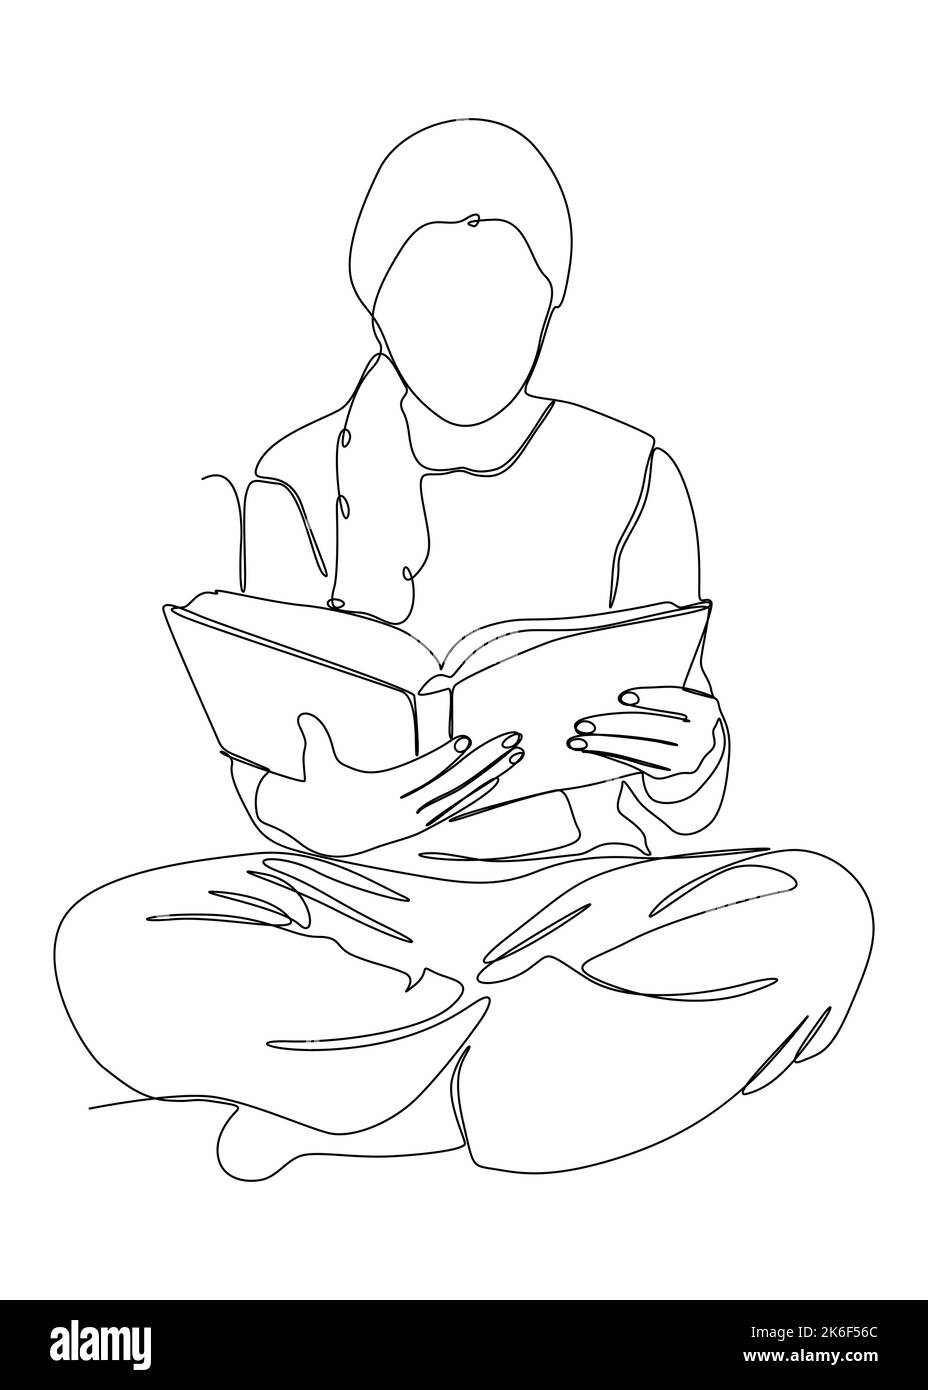 Eine fortlaufende Linienzeichnung eines Mädchens, das ein Buch liest. Vektor-Konzept der dünnen Linie Illustration. Konturzeichnen Kreative Ideen. Stock Vektor